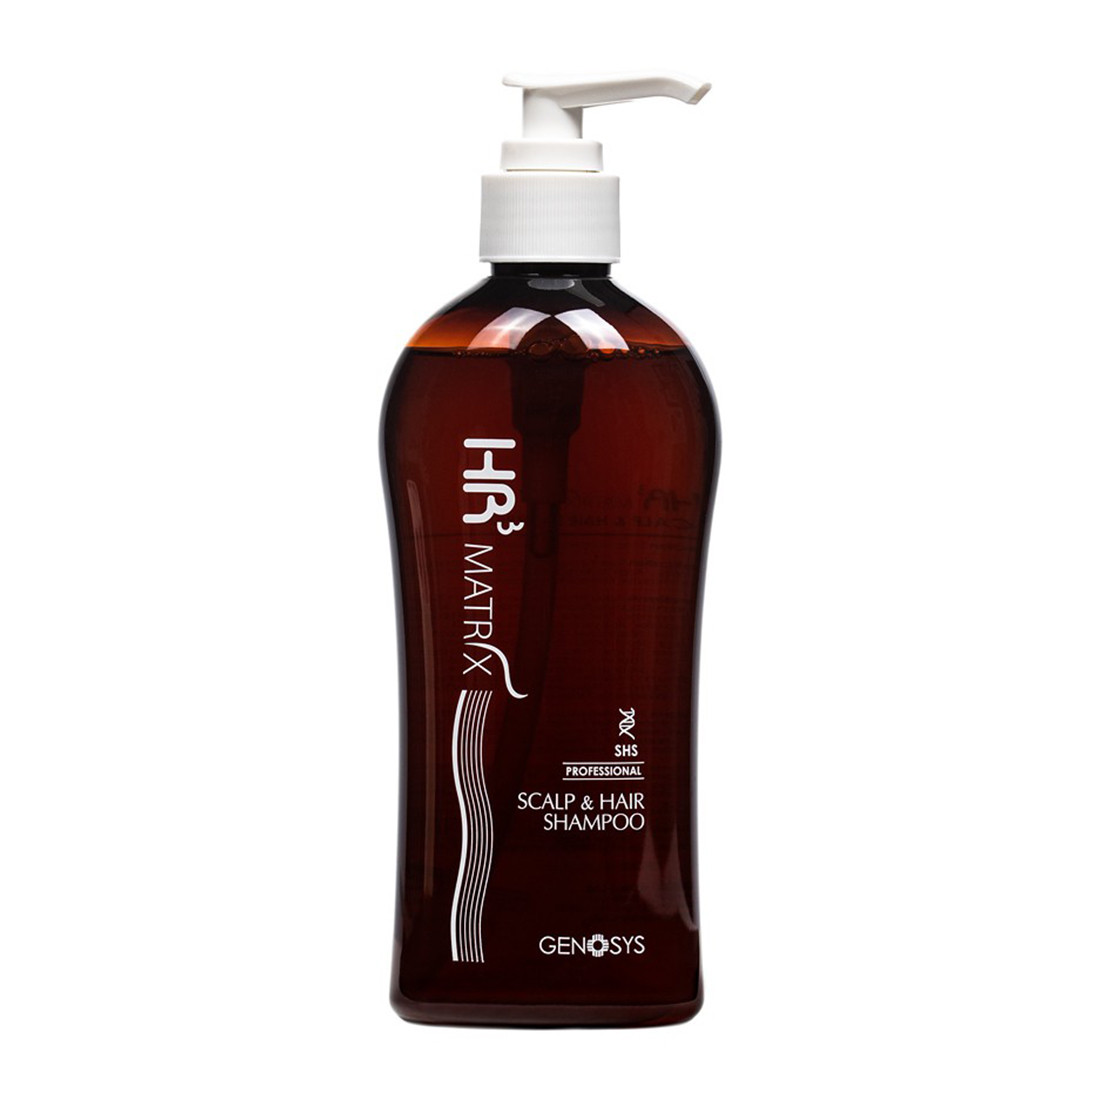 Отзывы о Genosys HR3 Matrix Scalp and Hair Shampoo (CHS) - Шампунь против выпадения волос